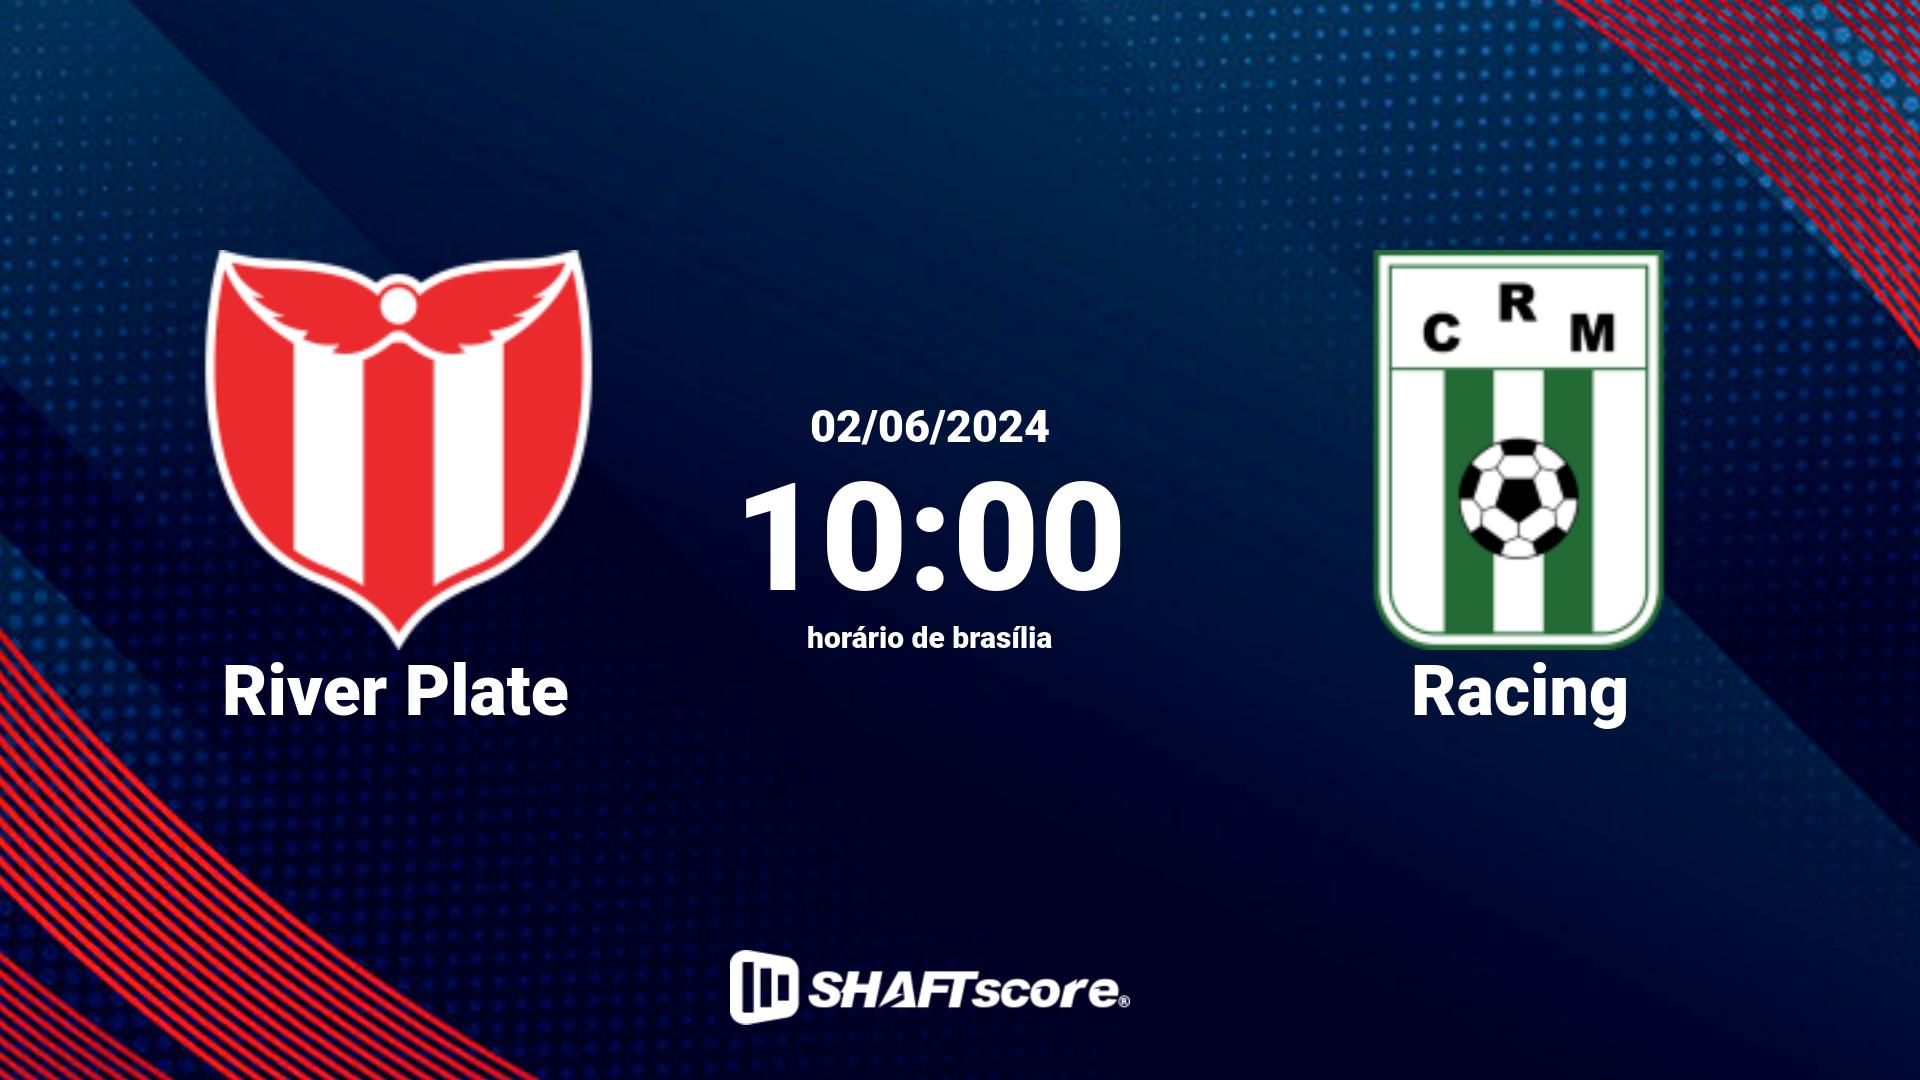 Estatísticas do jogo River Plate vs Racing 02.06 10:00